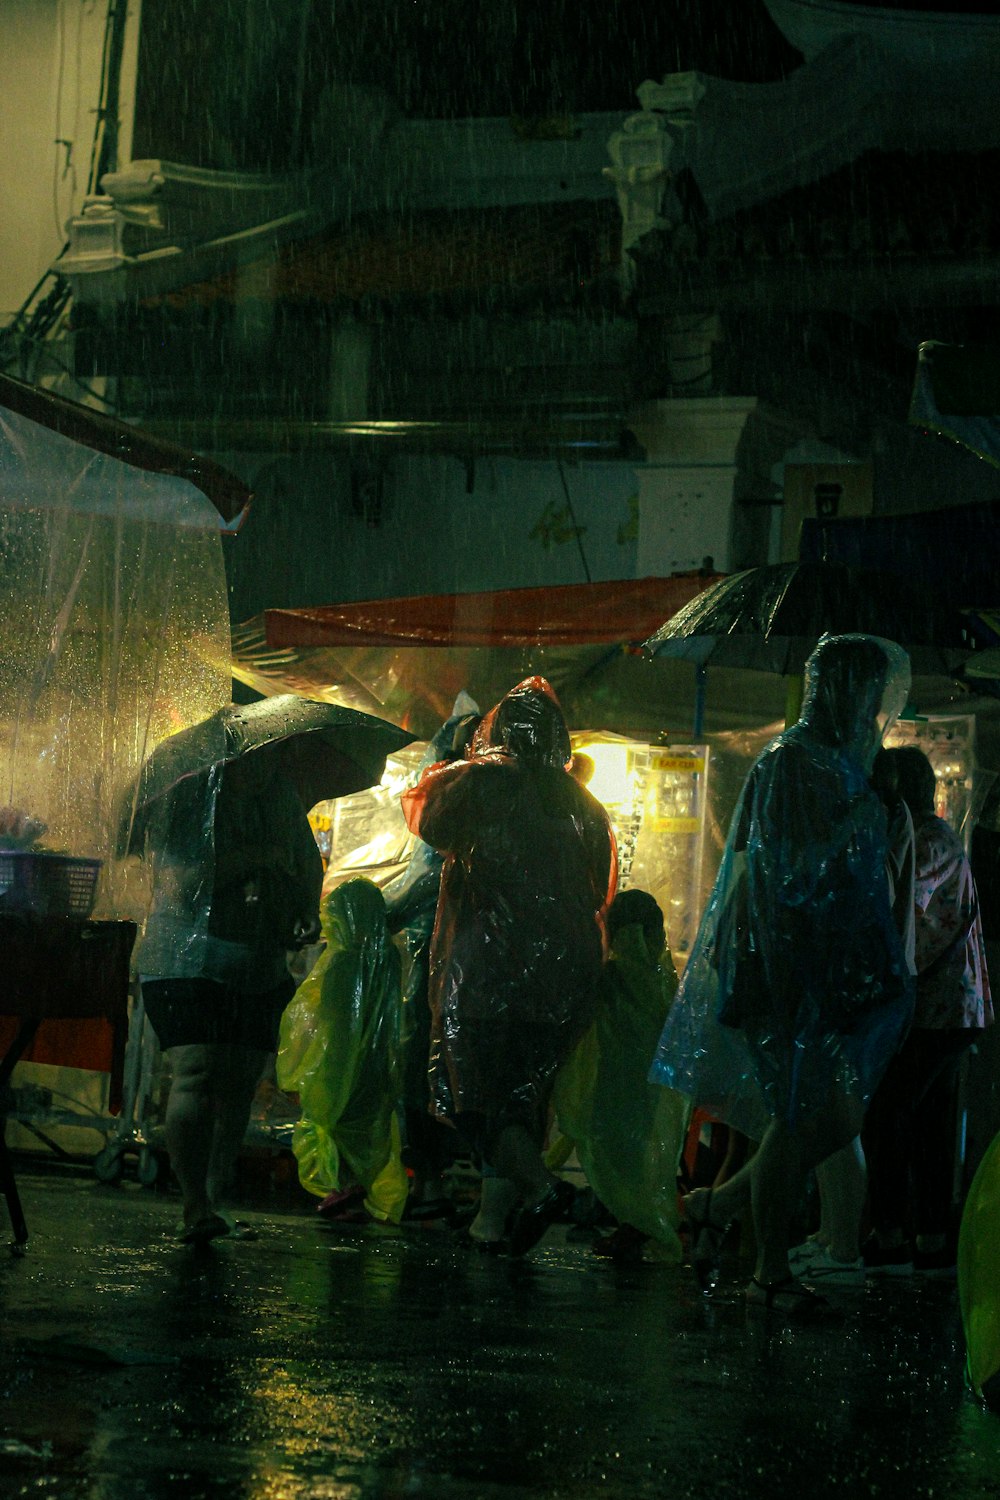 우산을 들고 빗속을 걷는 한 무리의 사람들